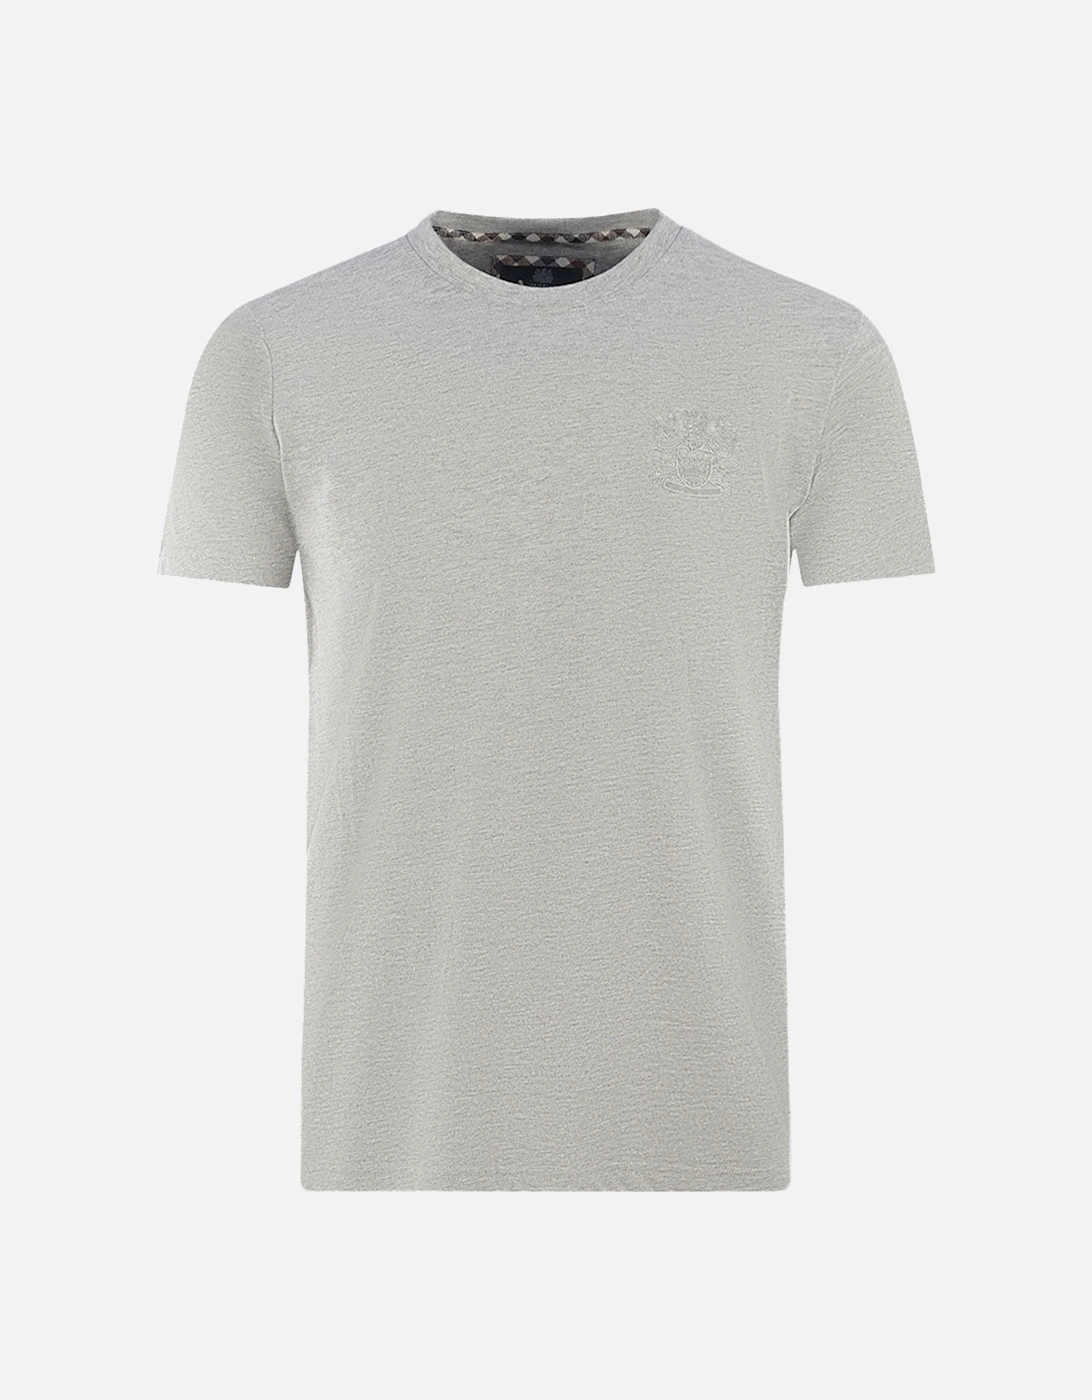 London Tonal Aldis Logo Grey T-Shirt, 4 of 3